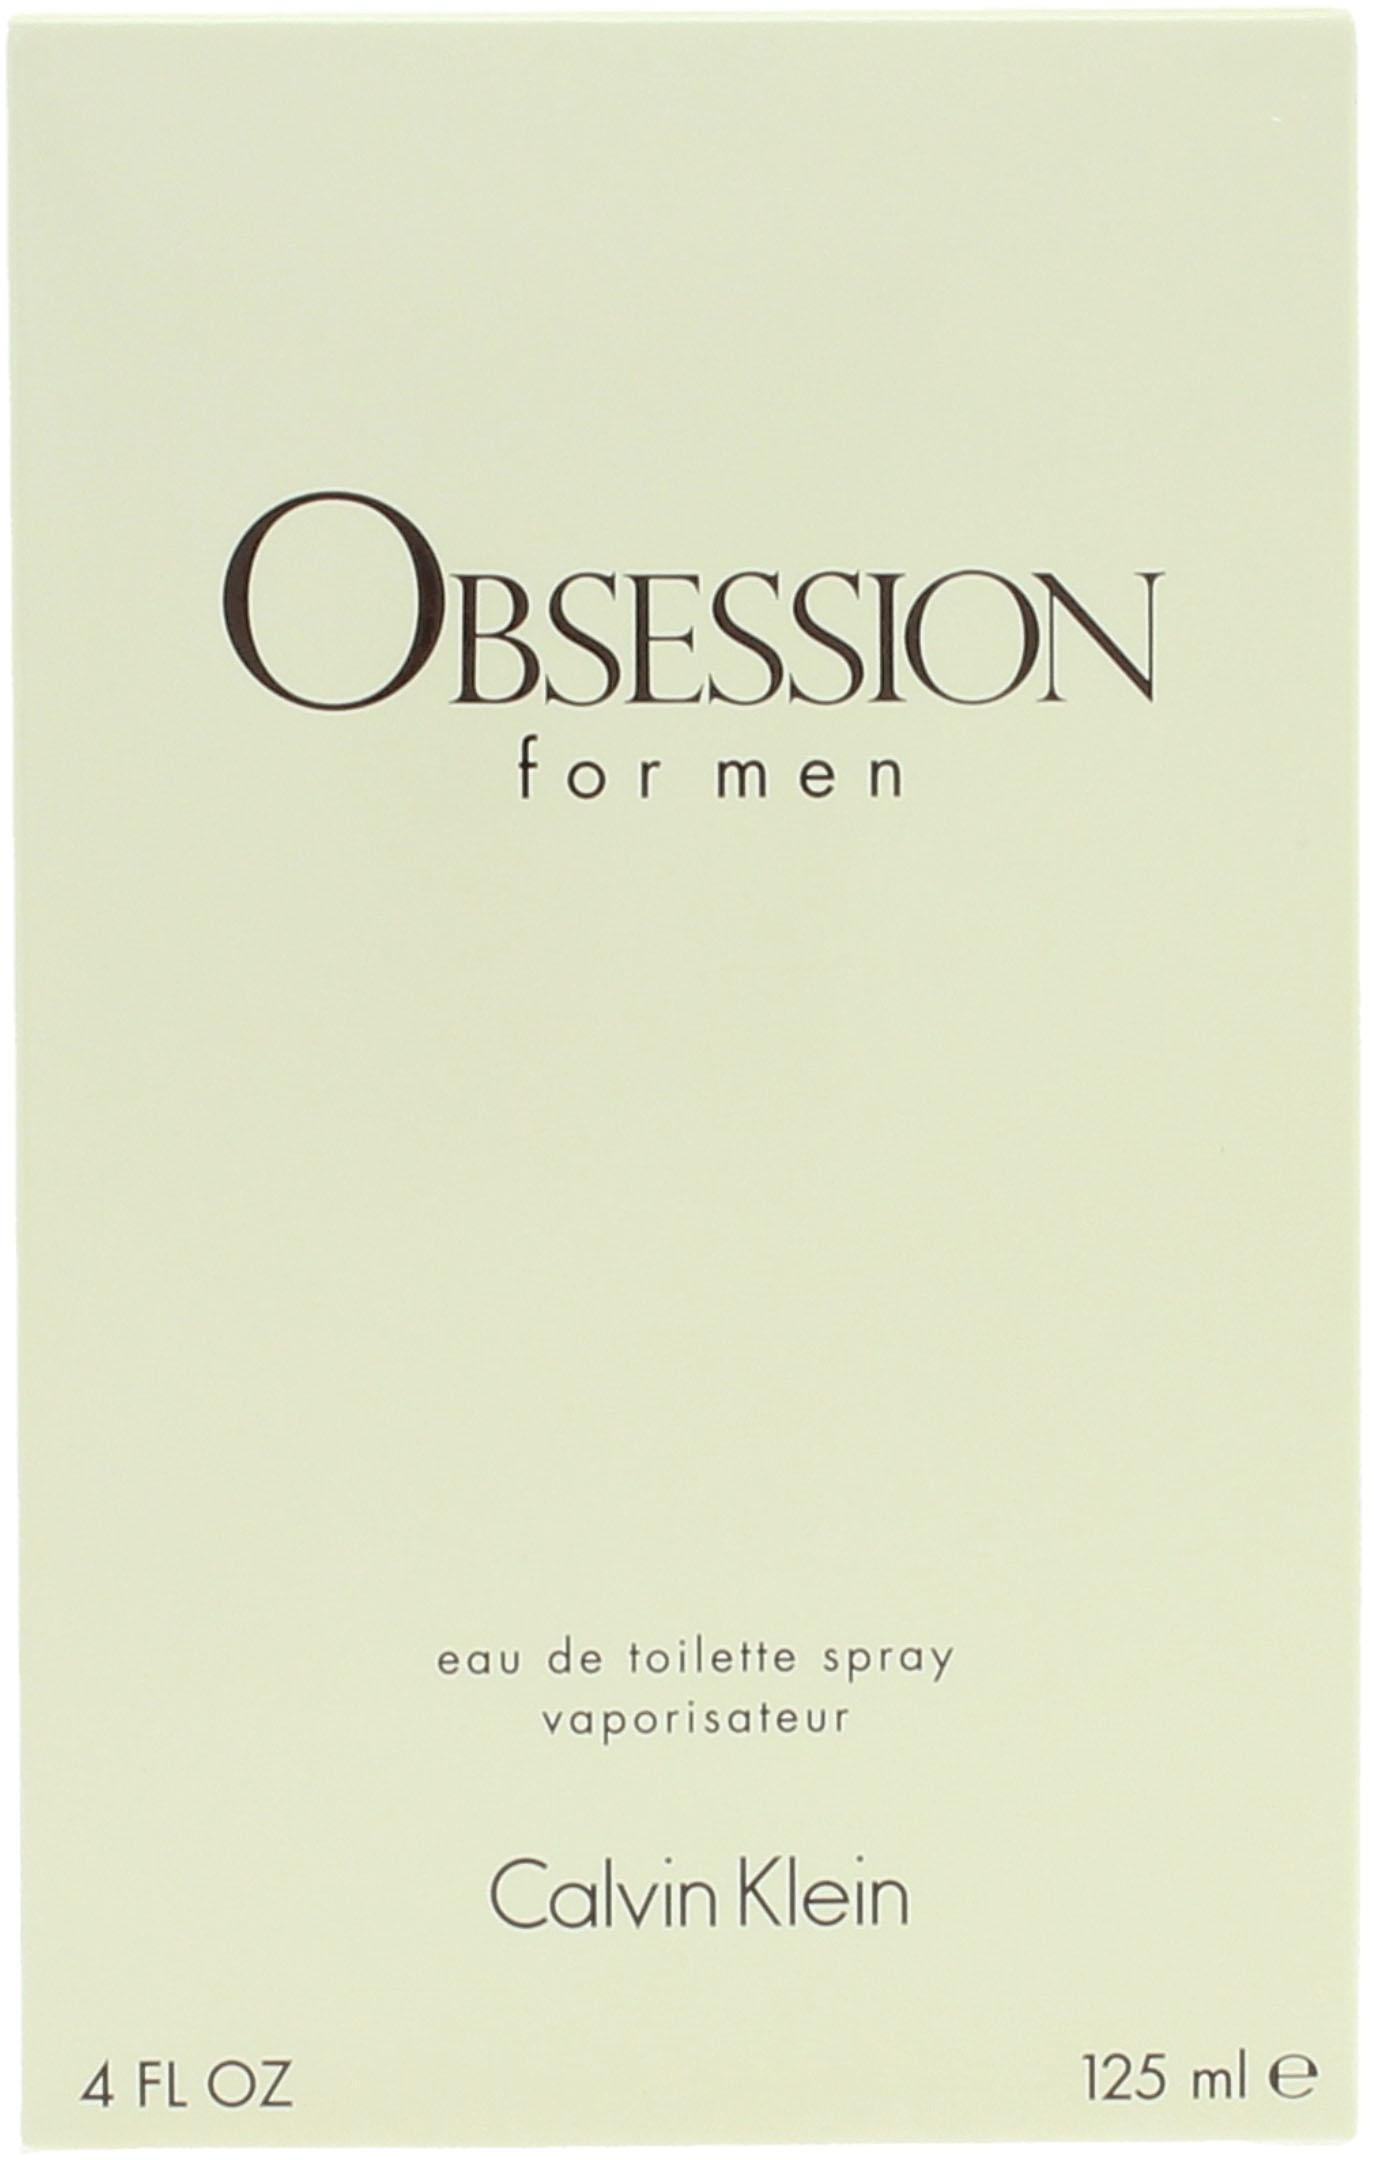 Men« Toilette For de Klein Eau Calvin »Obsession